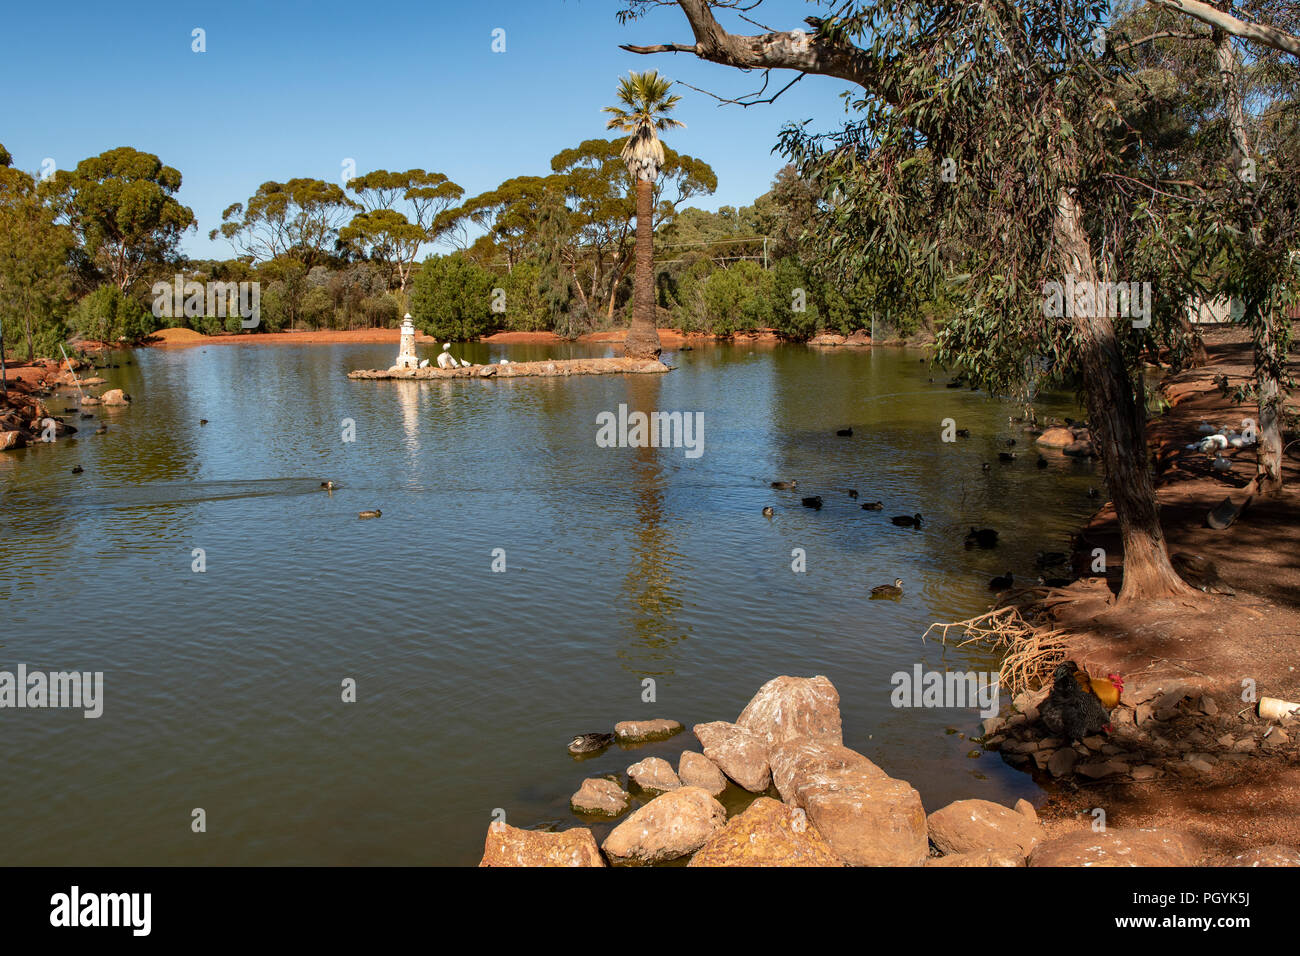 The Lake, Hammond Park, Kalgoorlie, WA, Australia Stock Photo